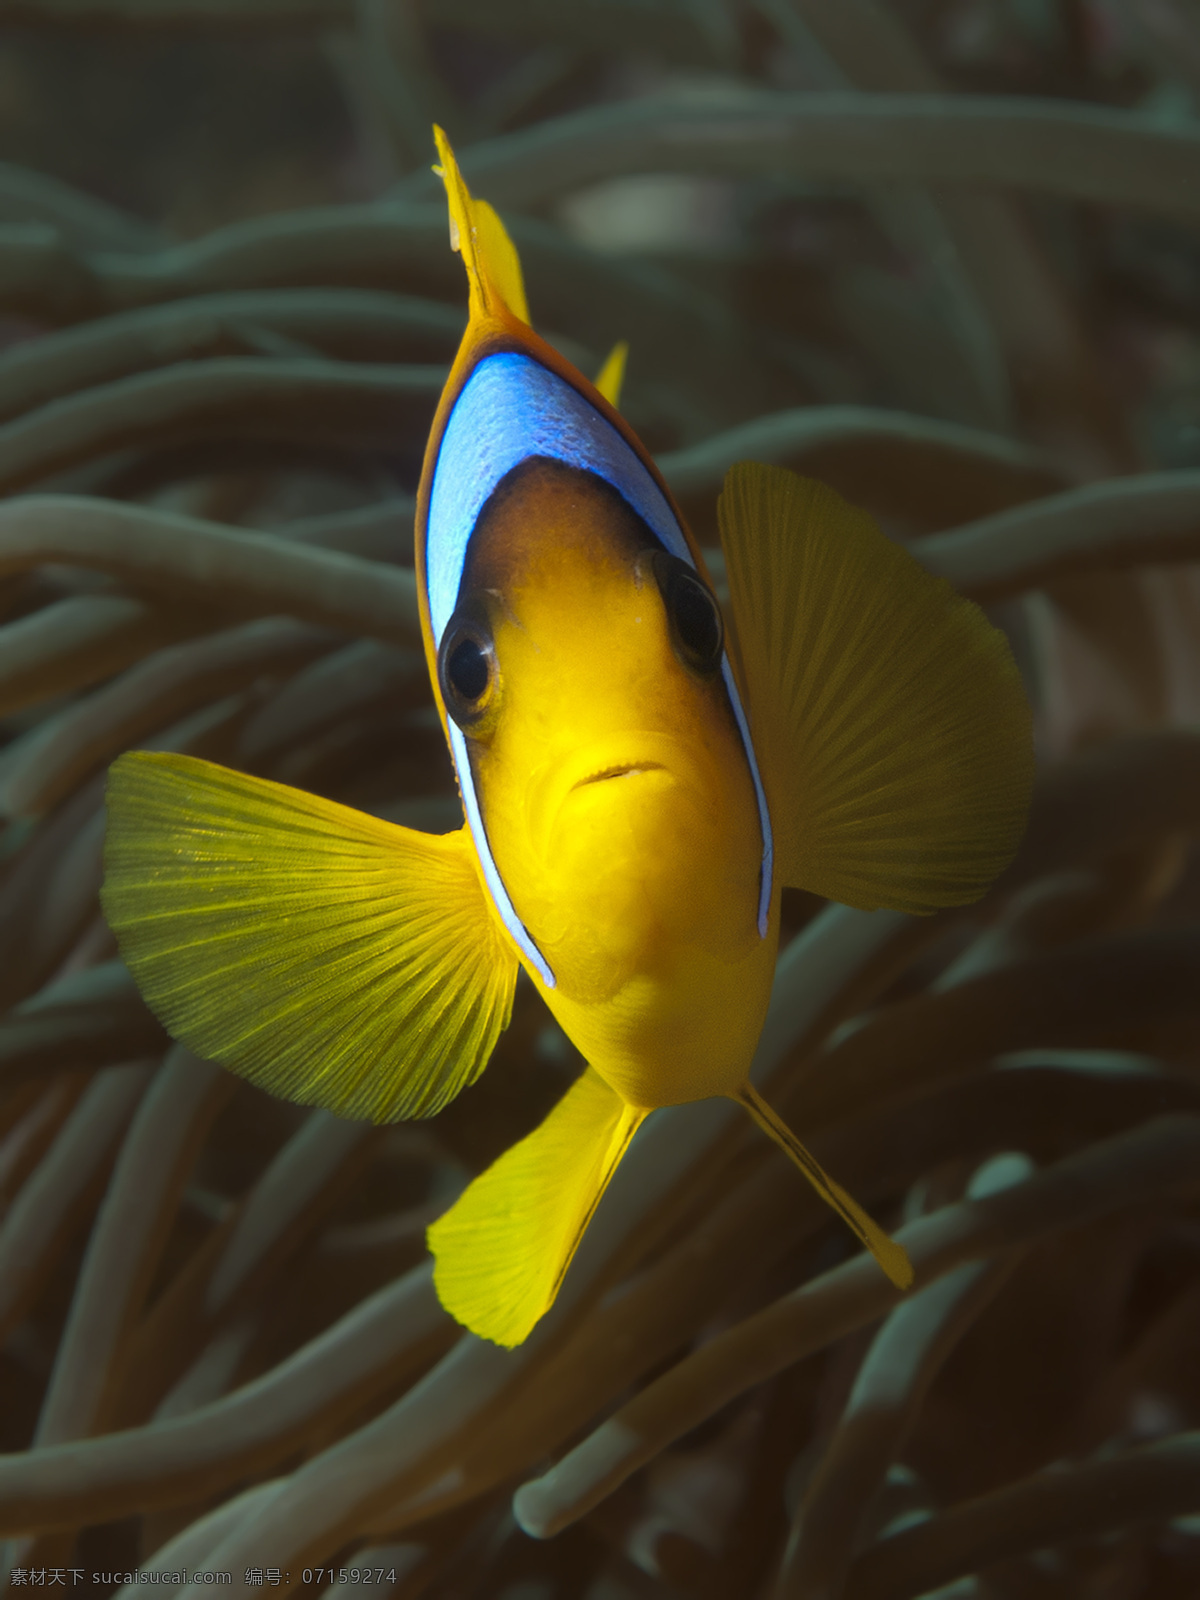 海底 动物 海底世界 海底生物 鱼类 鱼 大海图片 风景图片